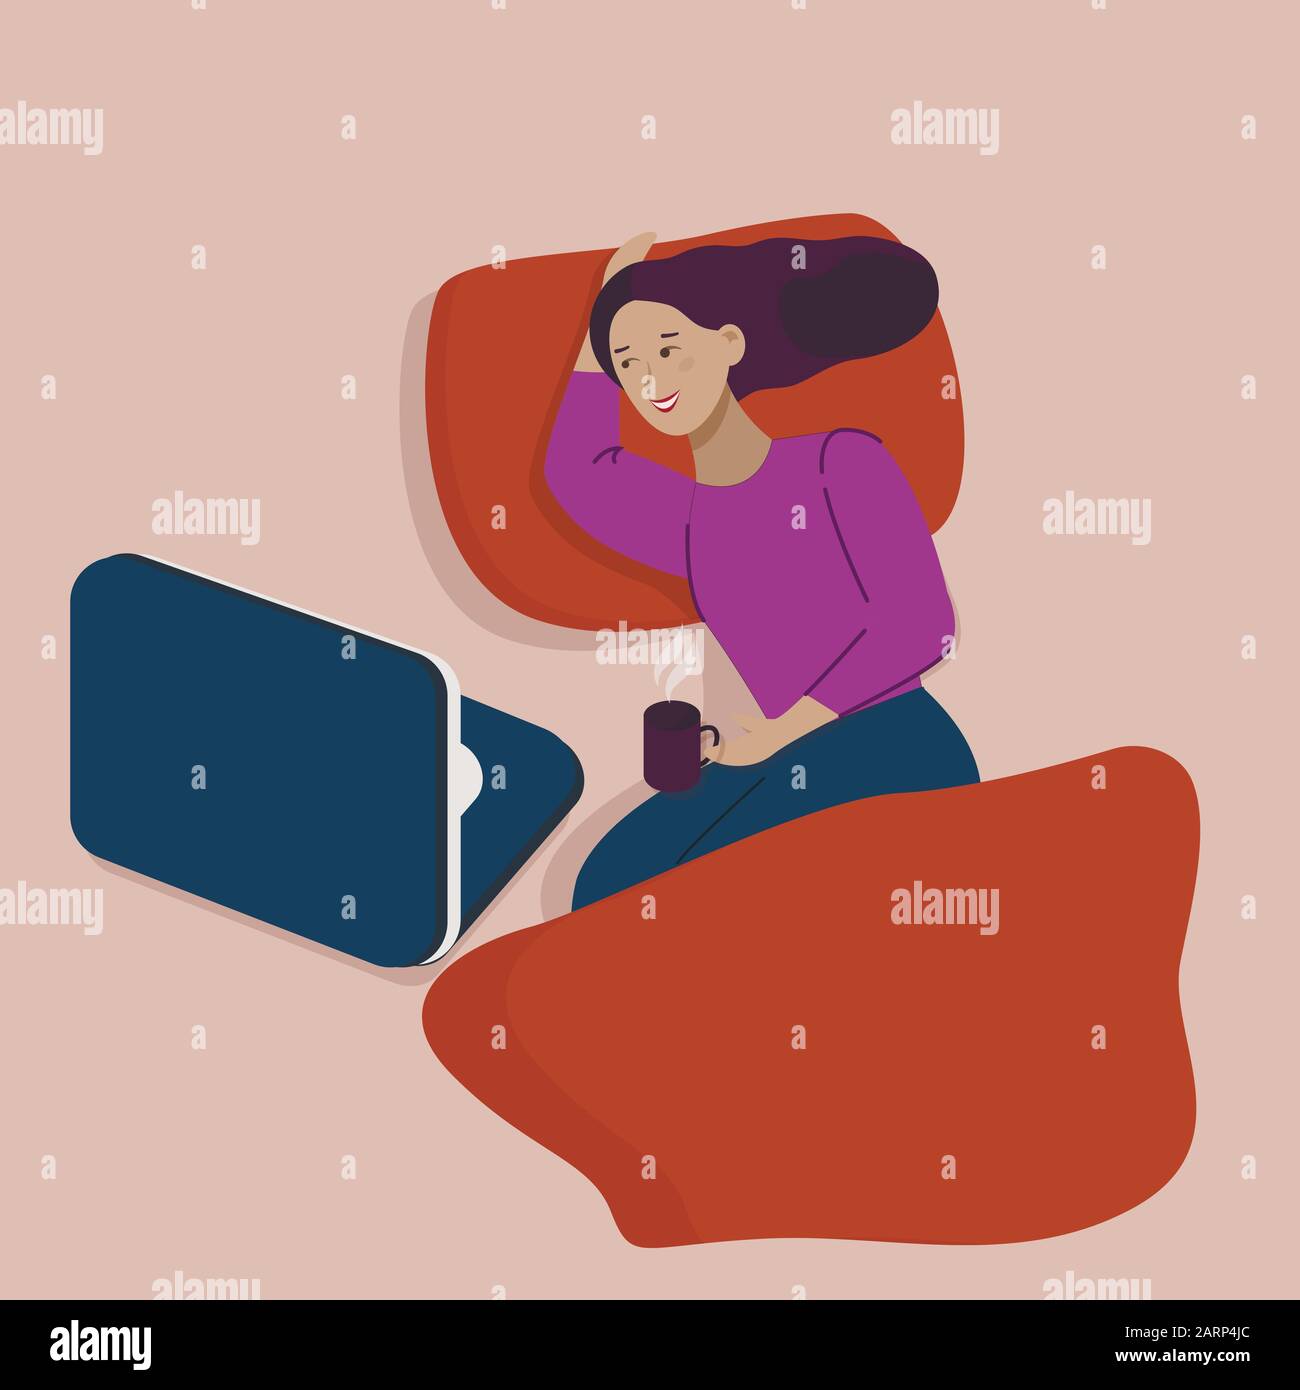 Vektor-Cartoon-Illustration von Jungen Frauen, die Tee oder Kaffee in ihrem Bett trinken und den Laptop überprüfen, Draufsicht Stock Vektor